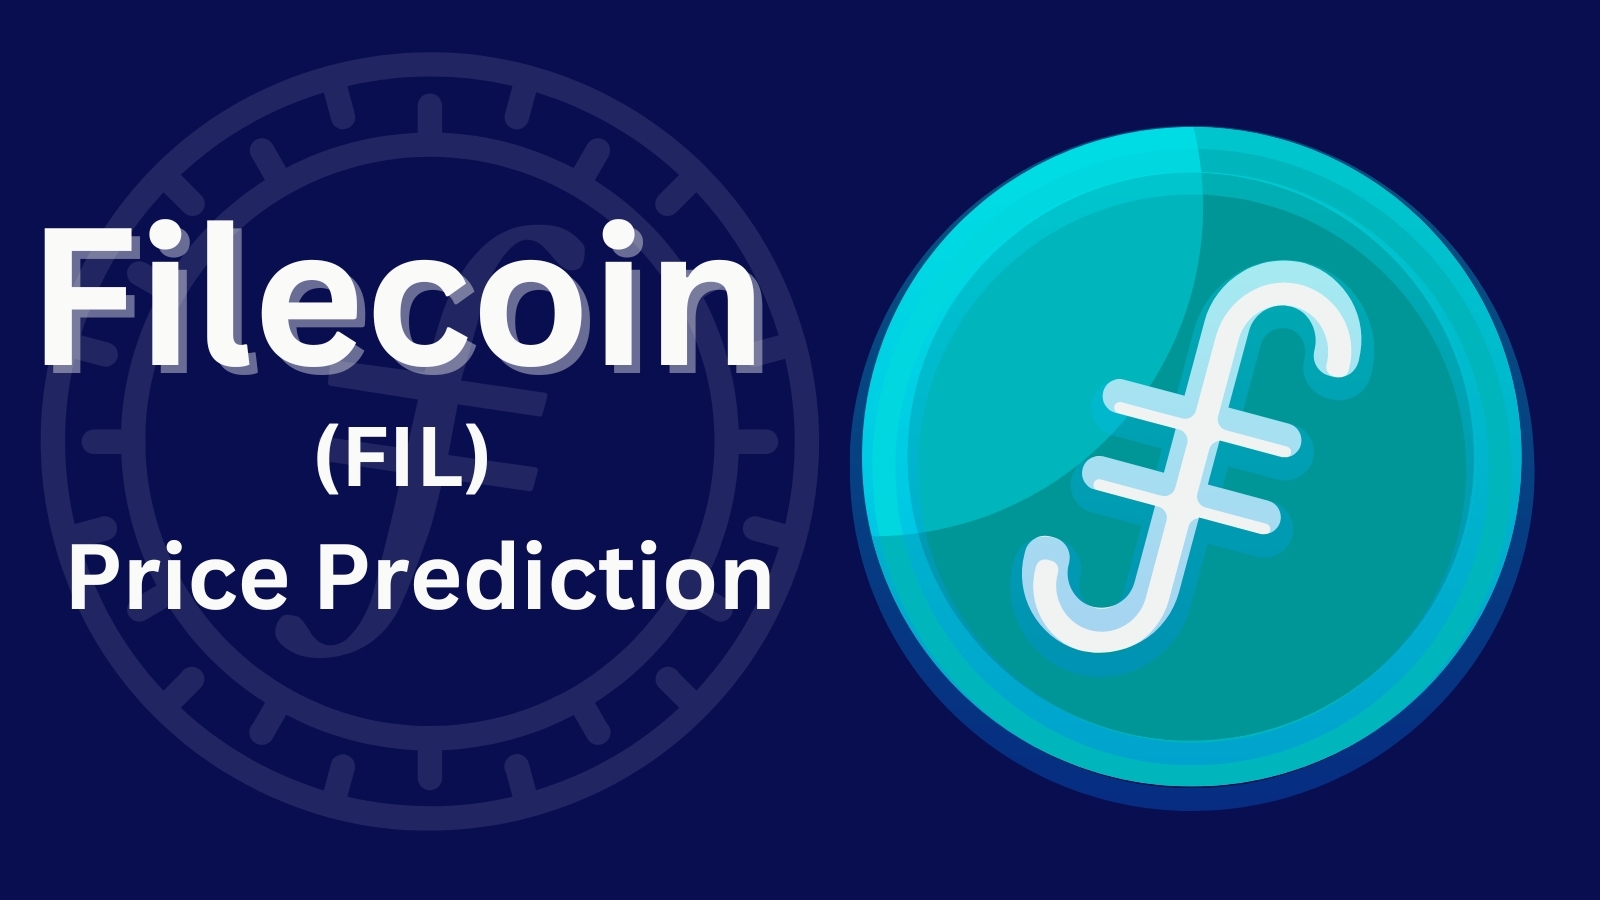 Filecoin (FIL) Price Prediction